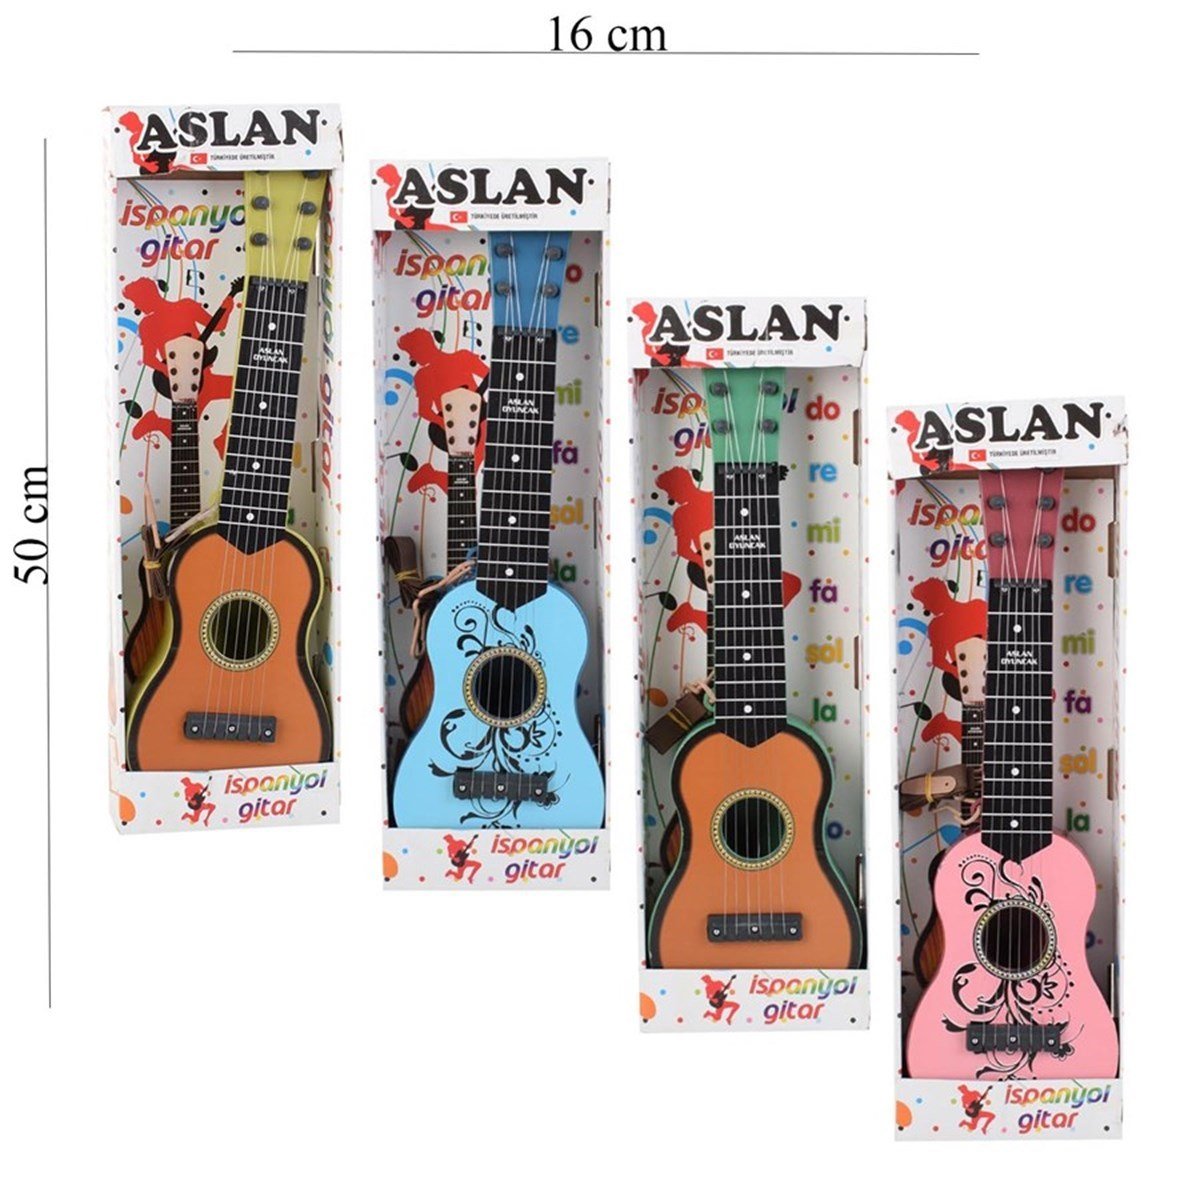 Aslan Oyuncak İspanyol Gitar Toptan Oyuncak Fiyatı | Samatlı Online B2B